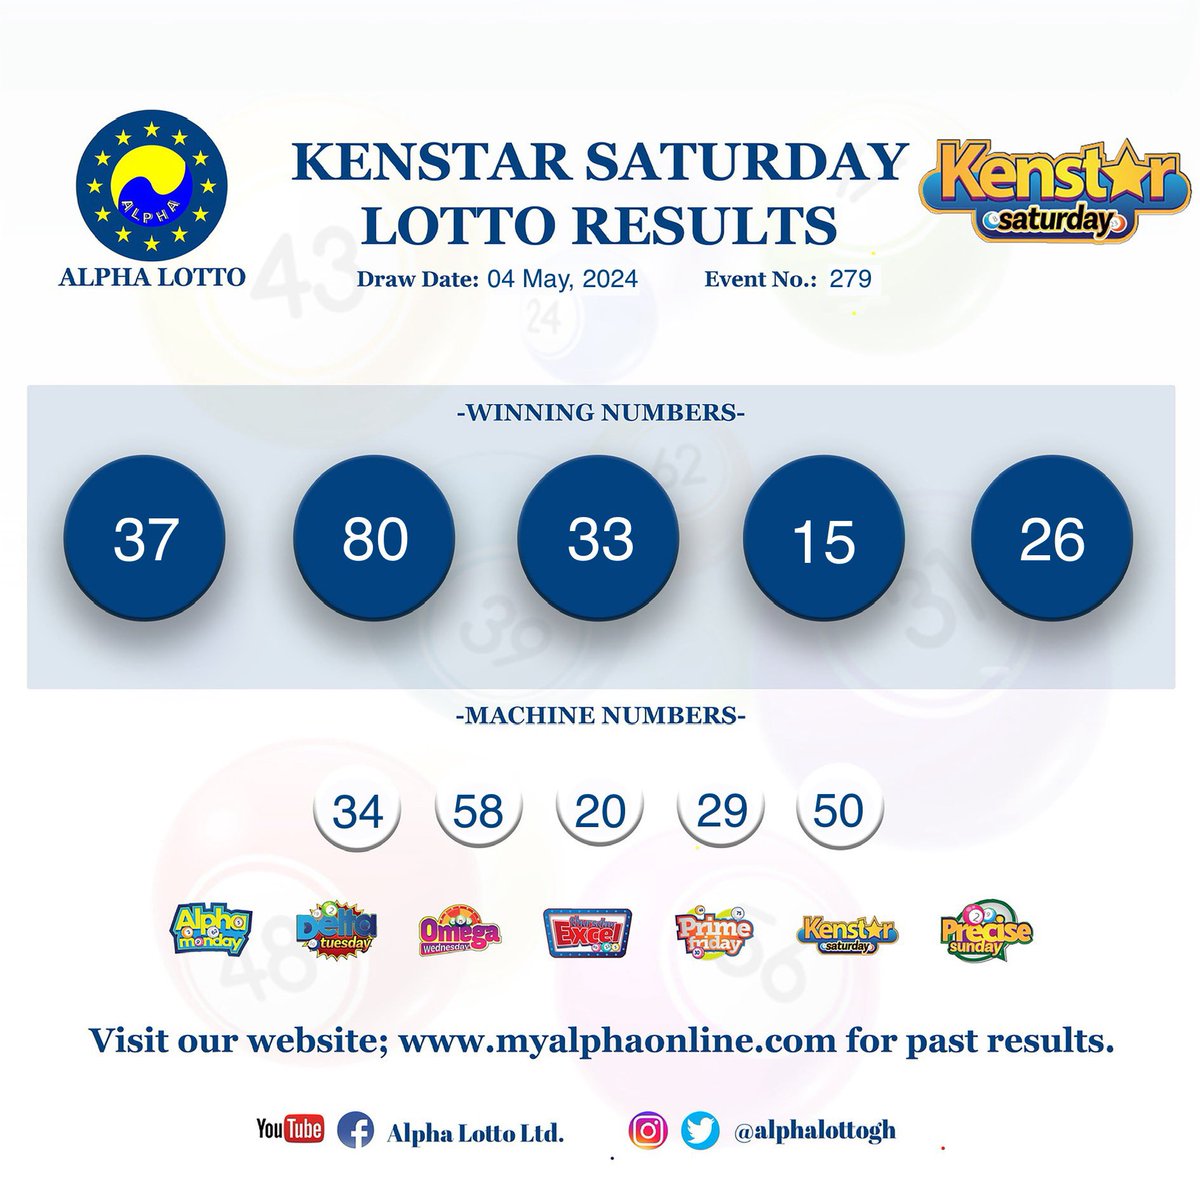 Kenstar Saturday results 04.05.24
Congratulations to all winners!
#alphalotto #kenstarsaturday #winningnumbers #money #winner